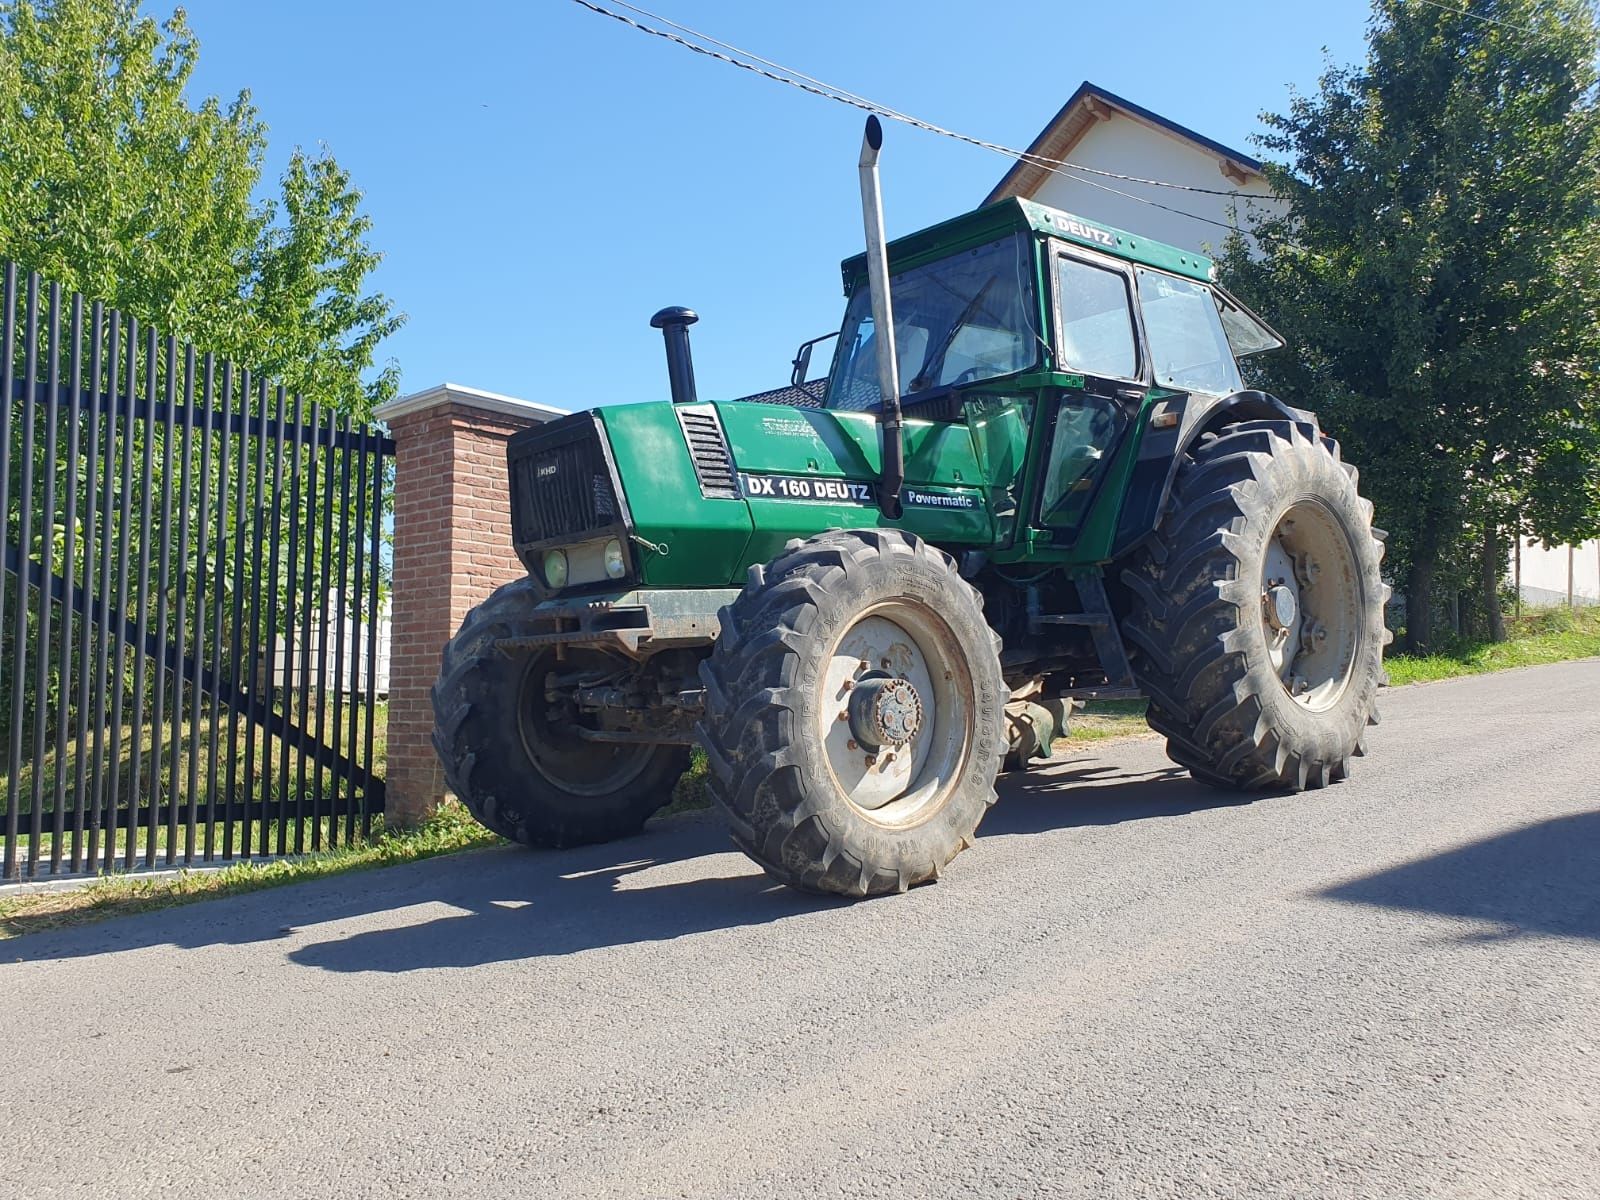 Tractor deutz 160 dx